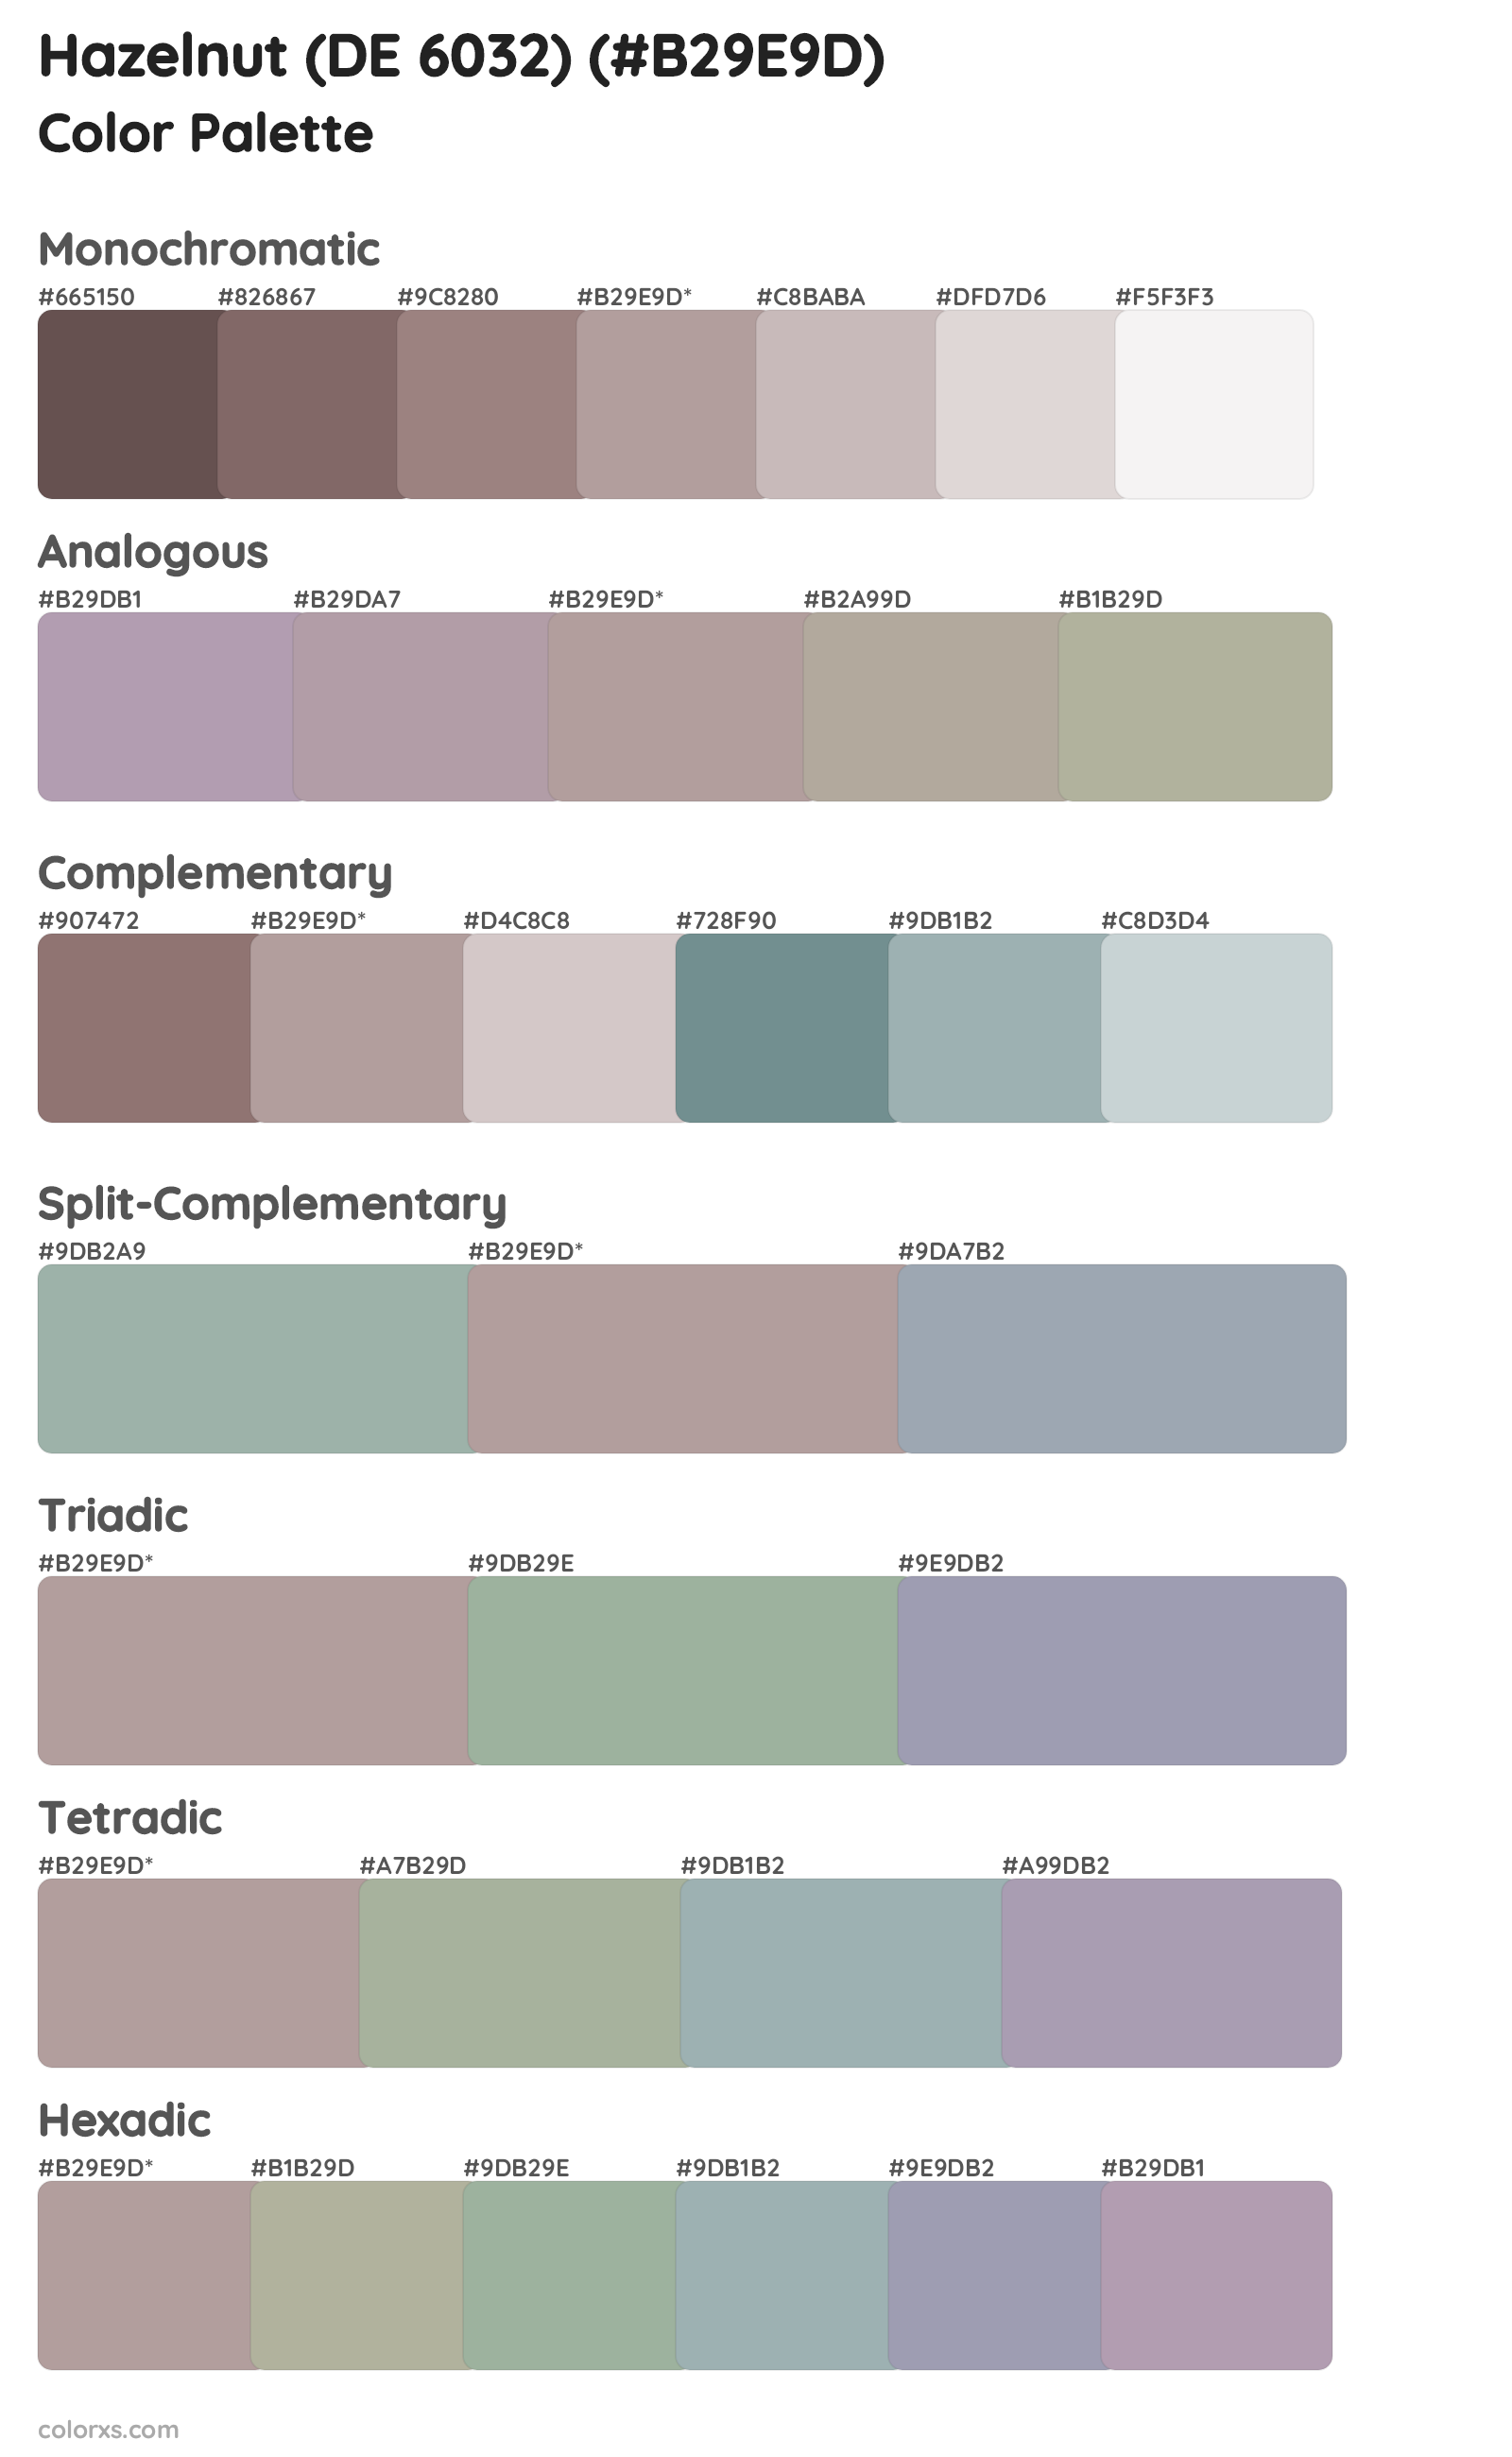 Hazelnut (DE 6032) Color Scheme Palettes